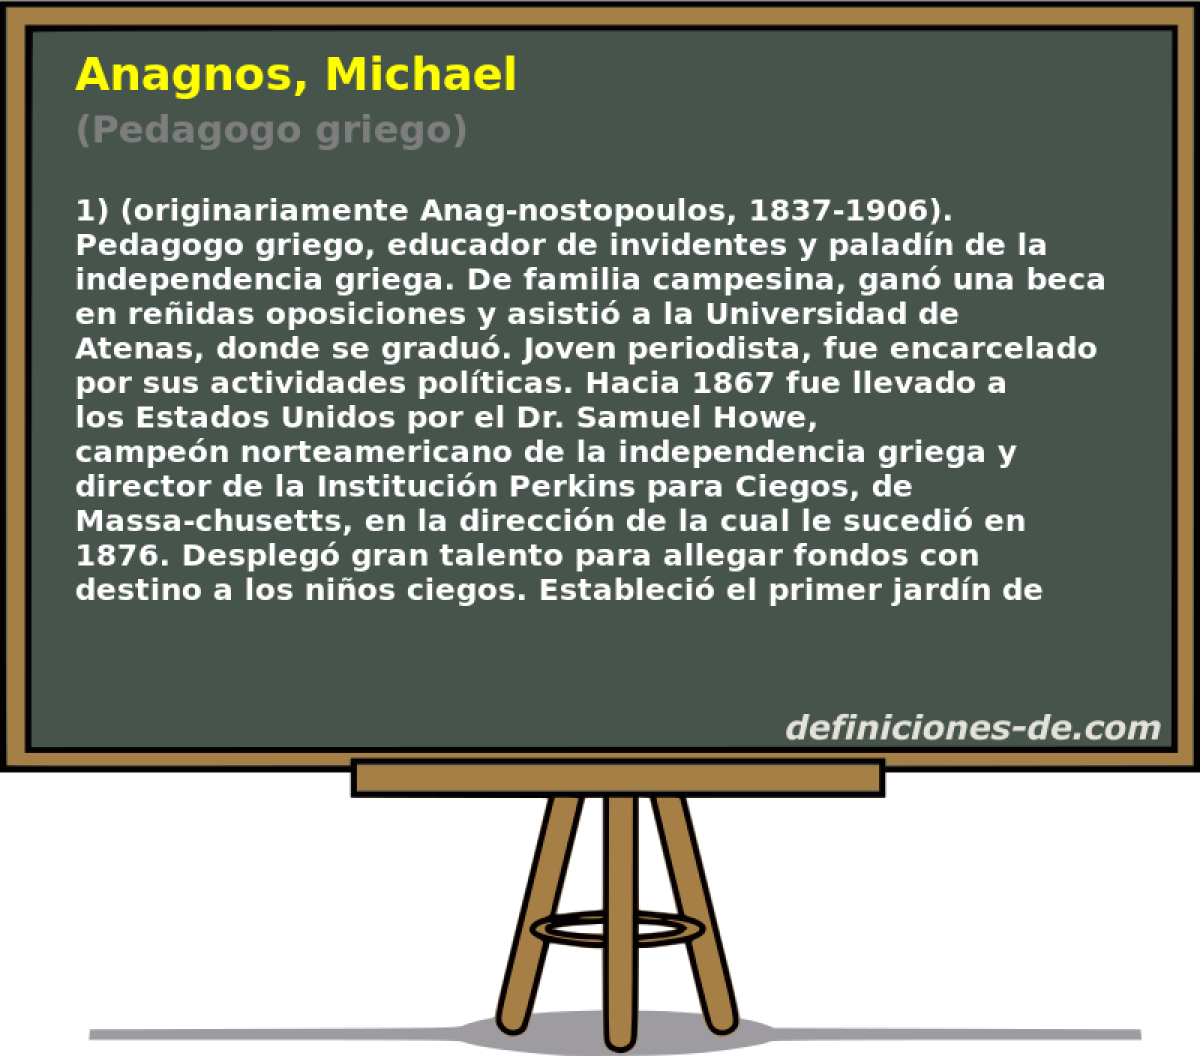 Anagnos, Michael (Pedagogo griego)